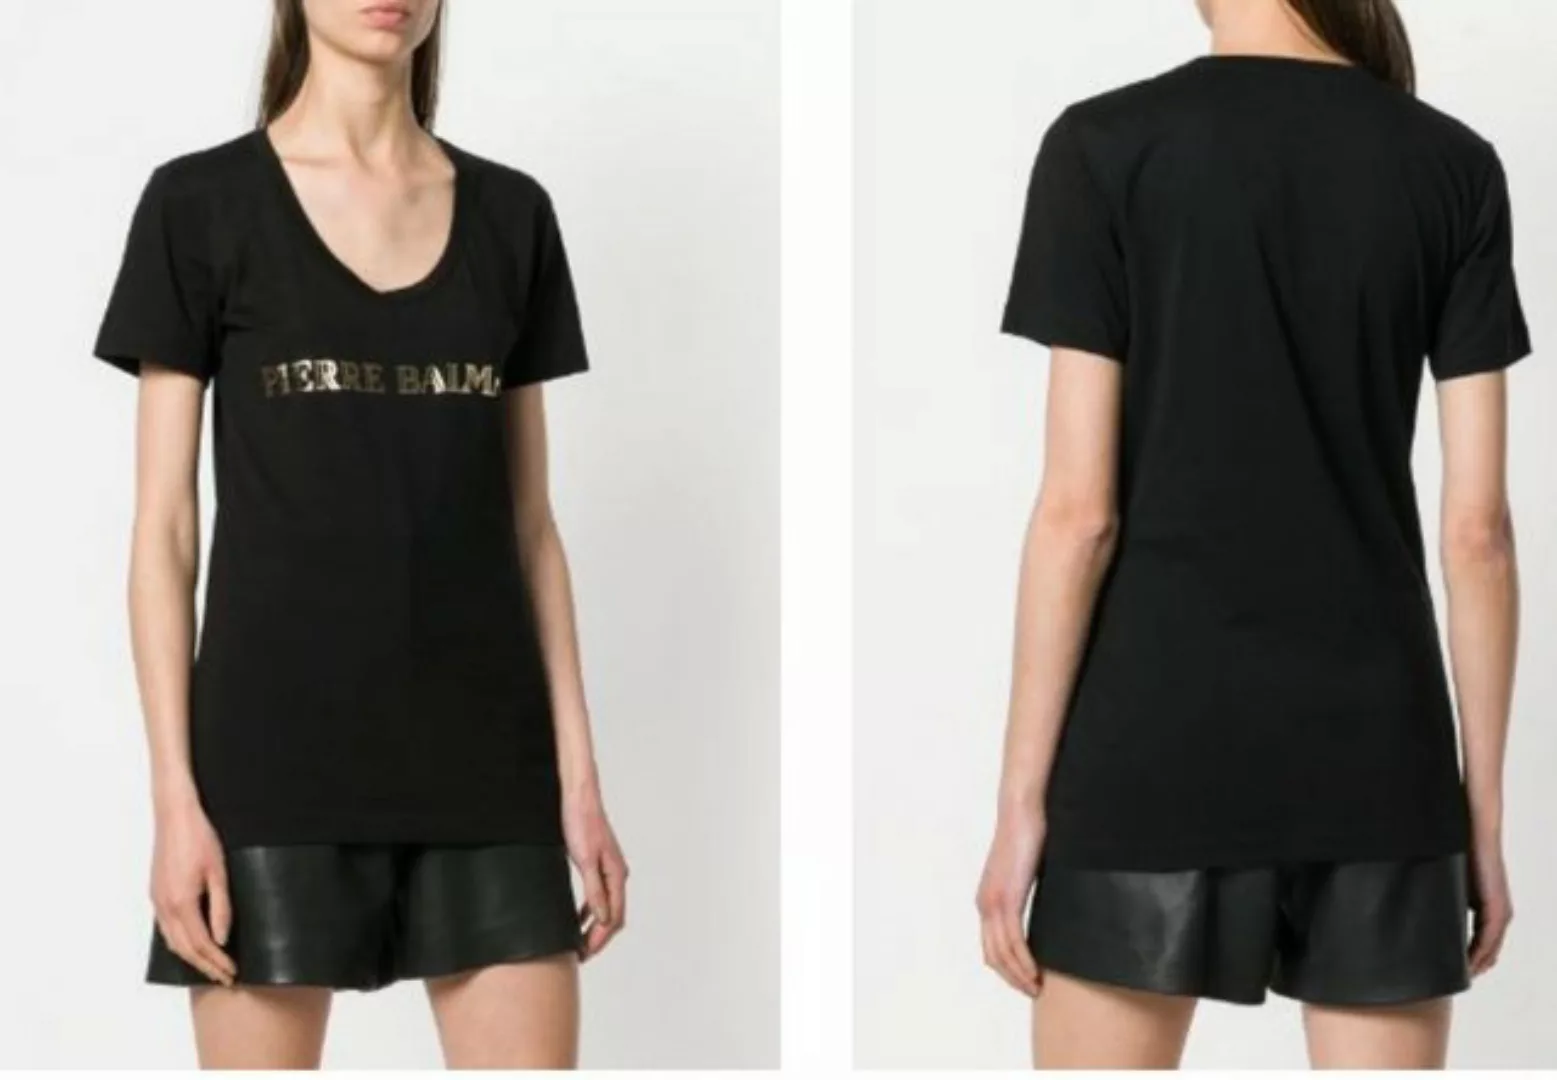 Balmain T-Shirt PIERRE BALMAIN ICONIC CULT ROCK LOGO BRAND LOGOSHIRT SHIRT günstig online kaufen